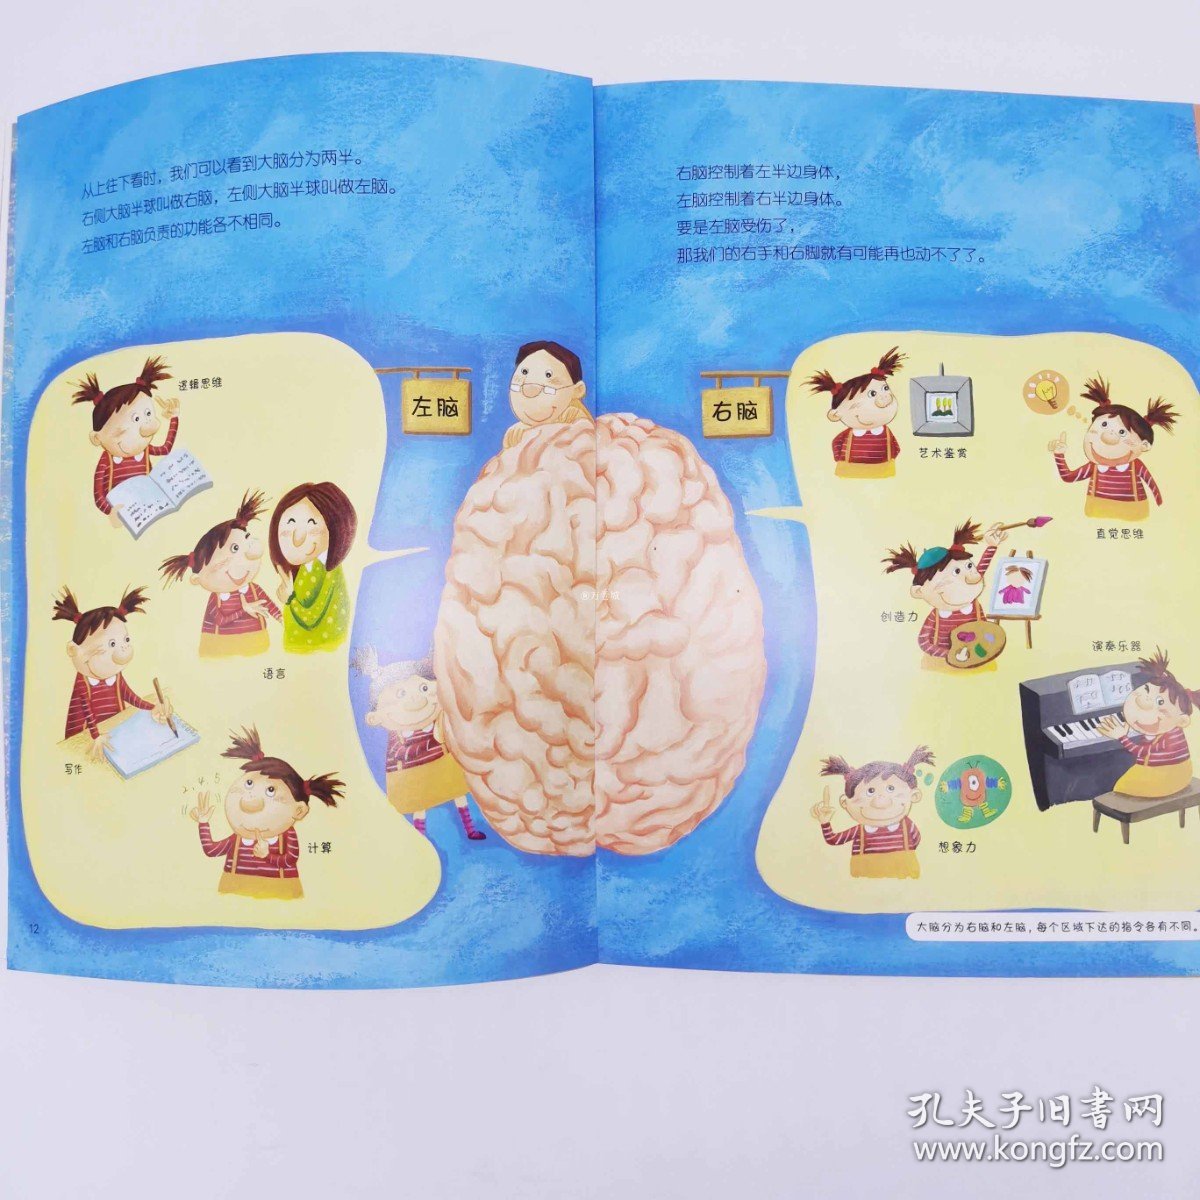 科学原理早知道 我们身体的总指挥 大脑 6-8-10-12儿童小学生1-6年级科学教育基础启蒙读本物理化学生物自然身体科学原理书籍